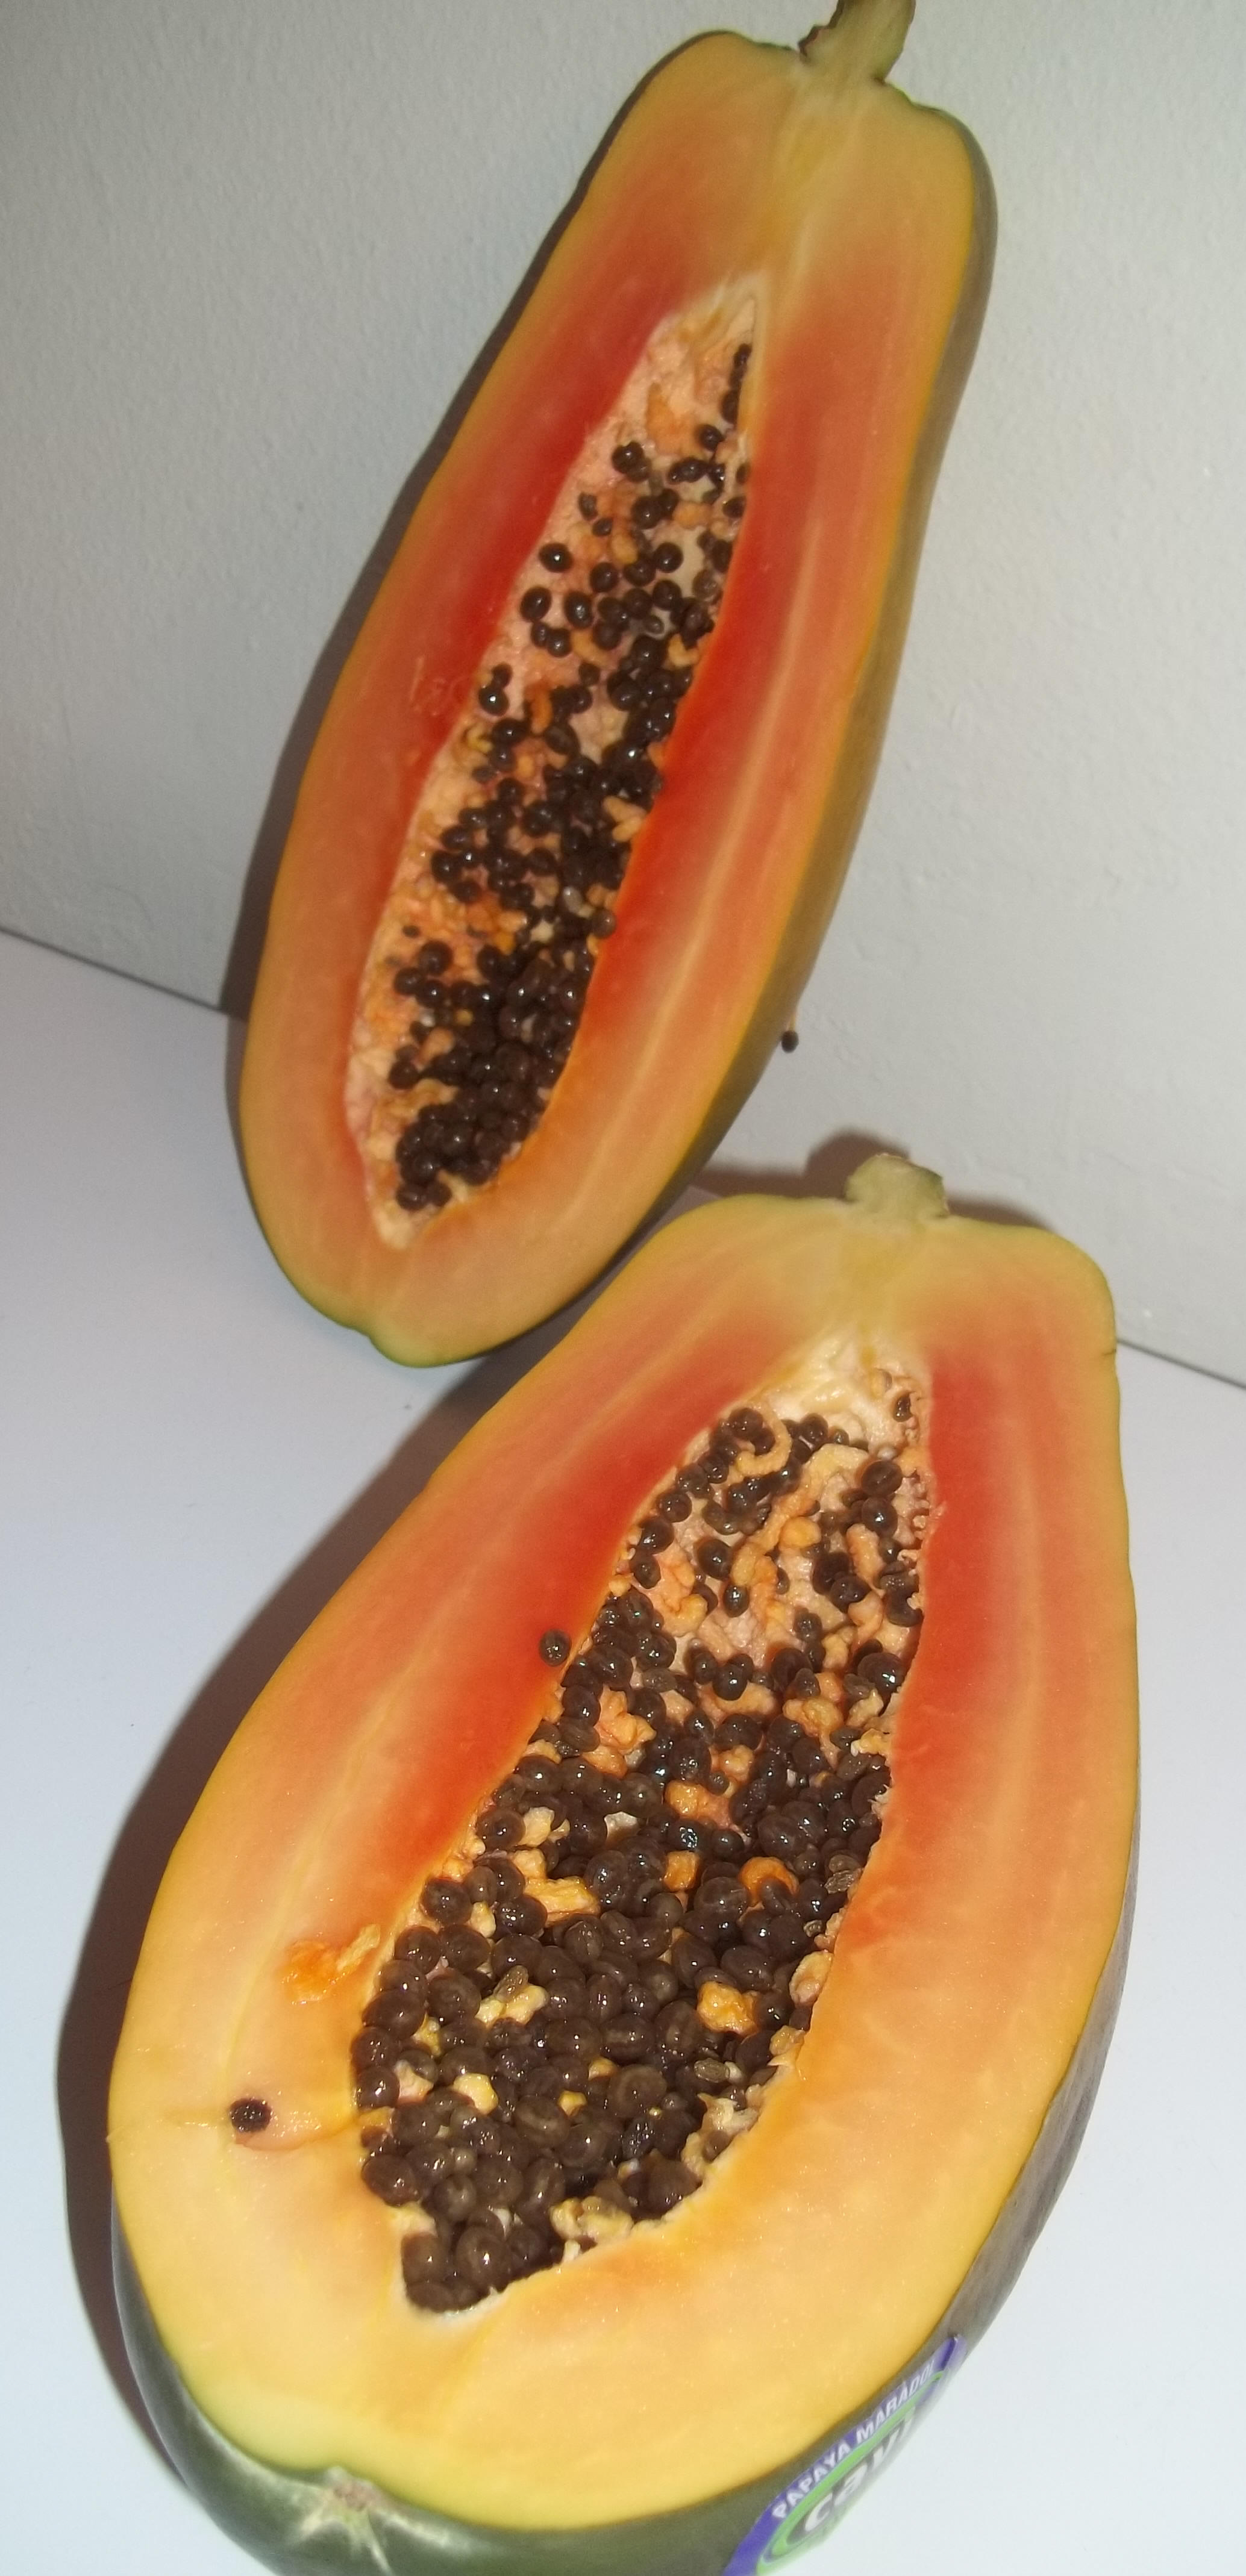 Papaya Image:  Theresa Klees